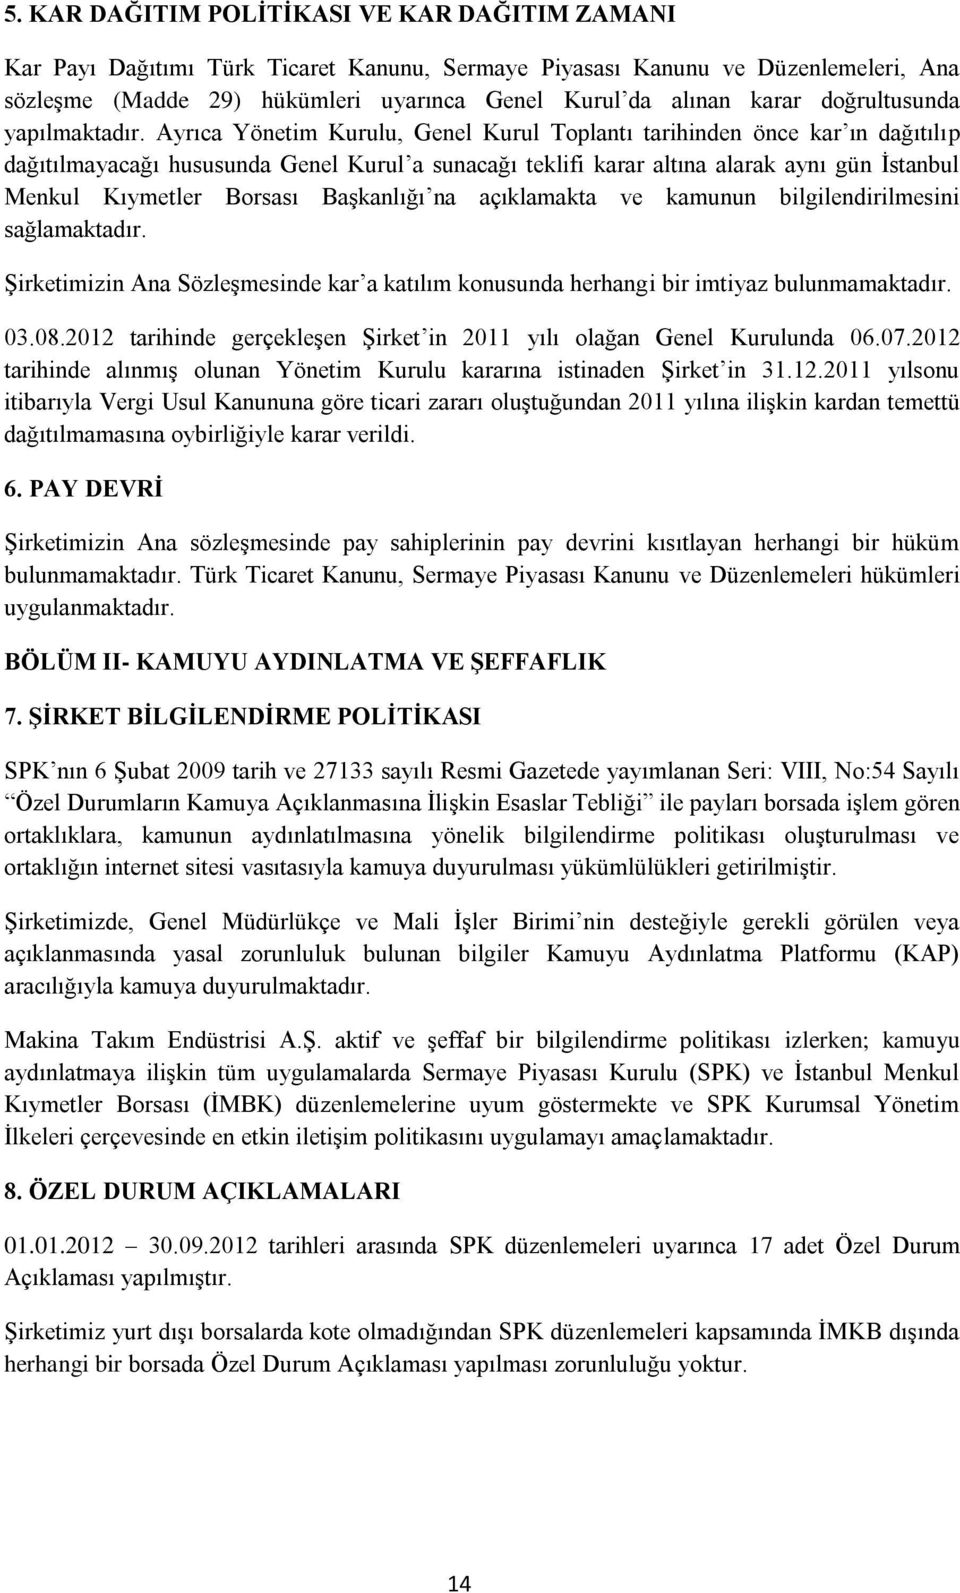 Ayrıca Yönetim Kurulu, Genel Kurul Toplantı tarihinden önce kar ın dağıtılıp dağıtılmayacağı hususunda Genel Kurul a sunacağı teklifi karar altına alarak aynı gün İstanbul Menkul Kıymetler Borsası